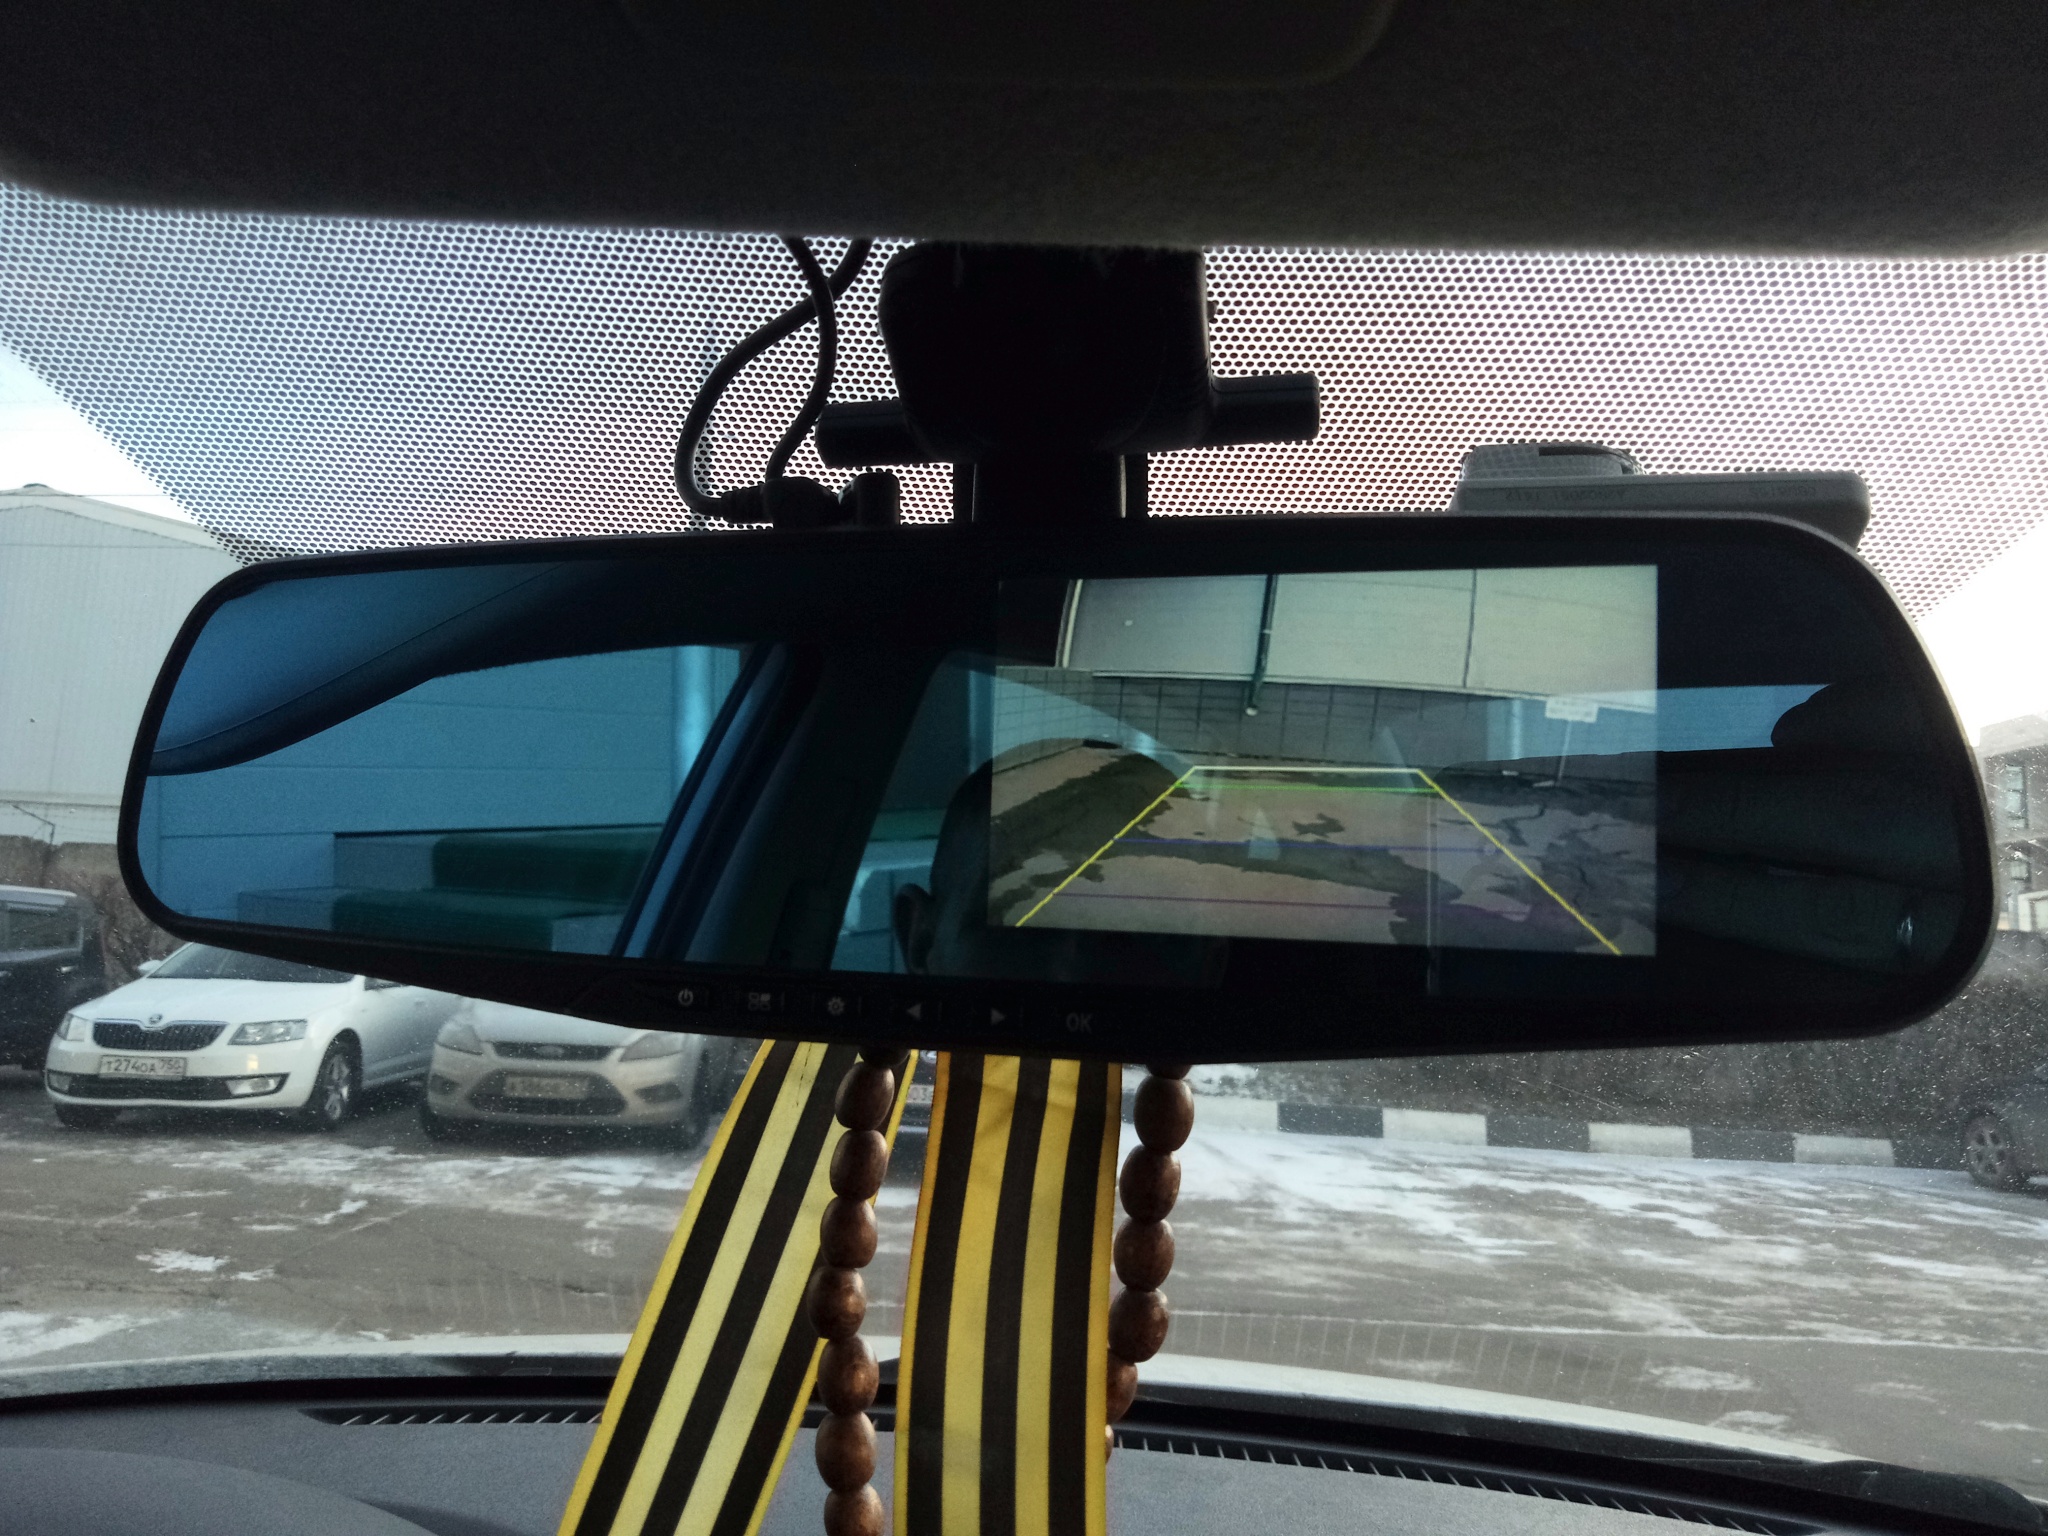 Roadgid t4 grand видеорегистратор с камерой заднего вида и ассистентом парковки